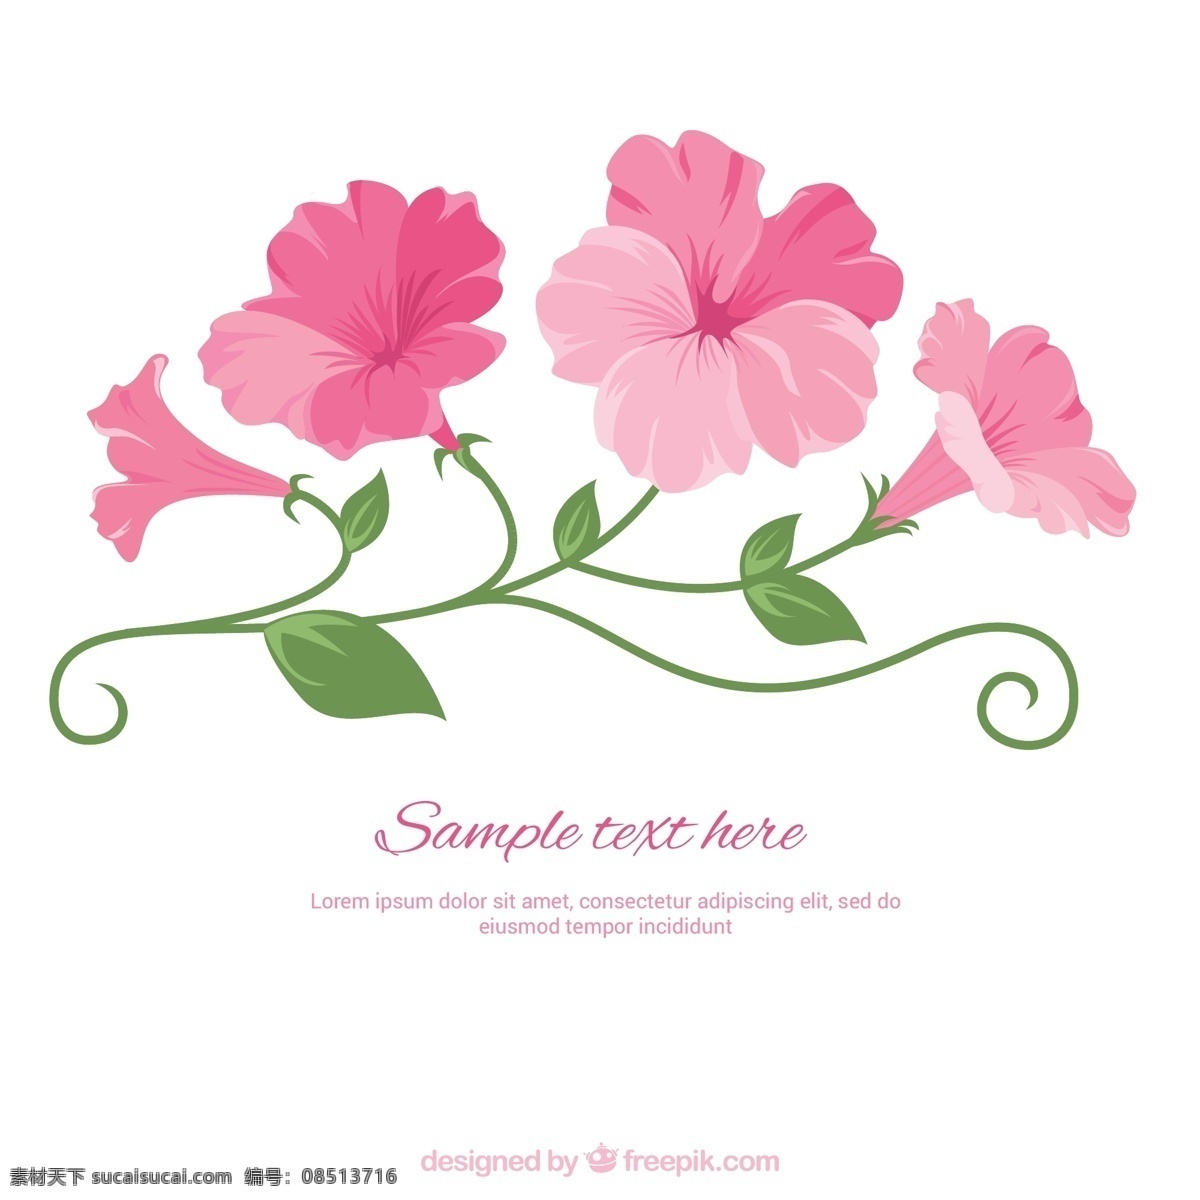 明了 粉色 花 模板 春天 粉红色 插图 春天的花朵 白色